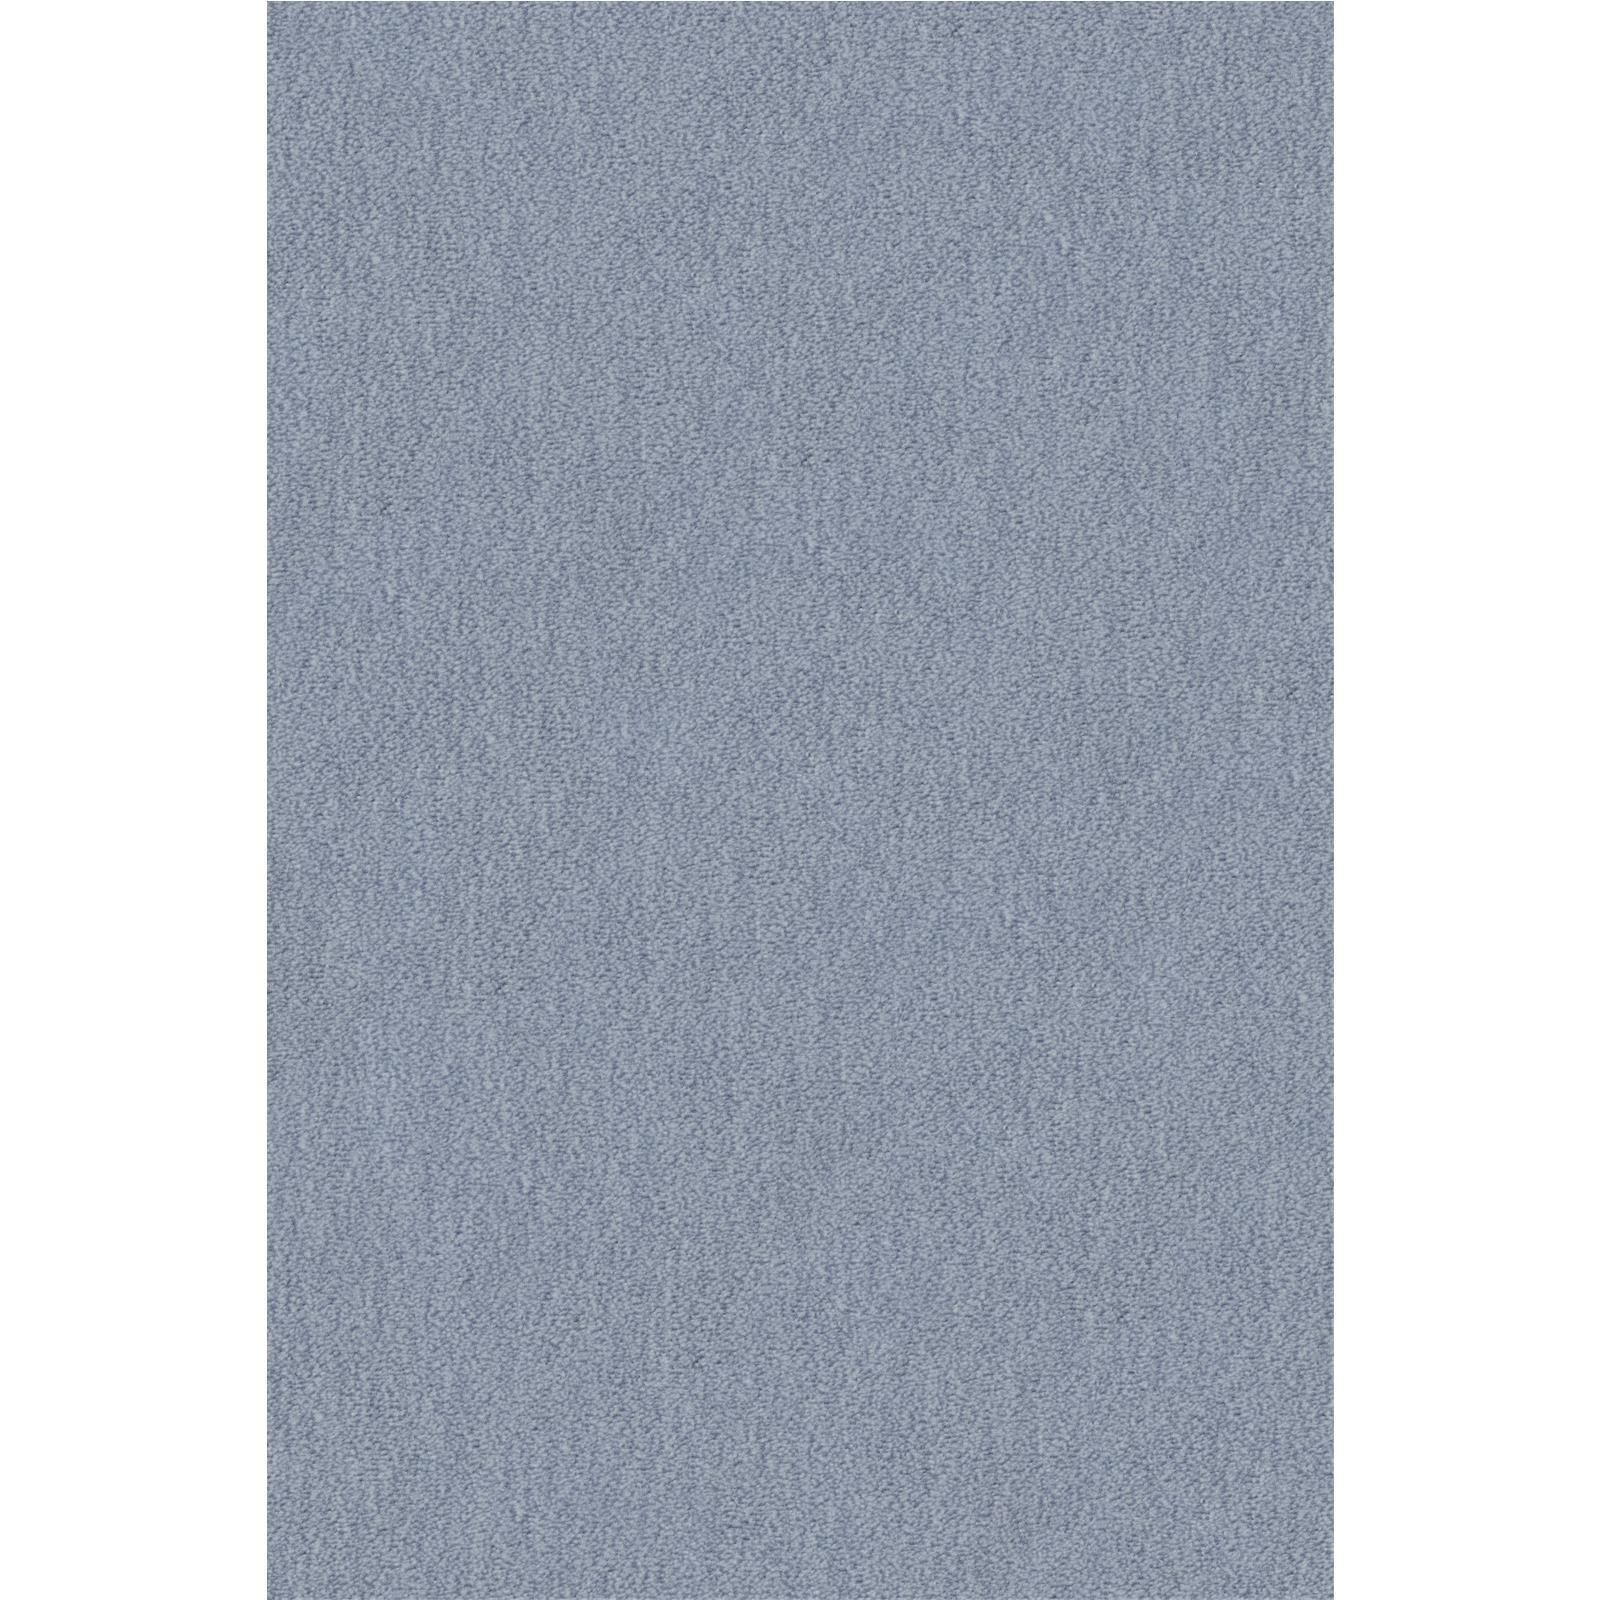 Teppichboden Vorwerk Passion 1002 NUTRIA MELANGE Velours Blau 3R14 - Rollenbreite 400 cm